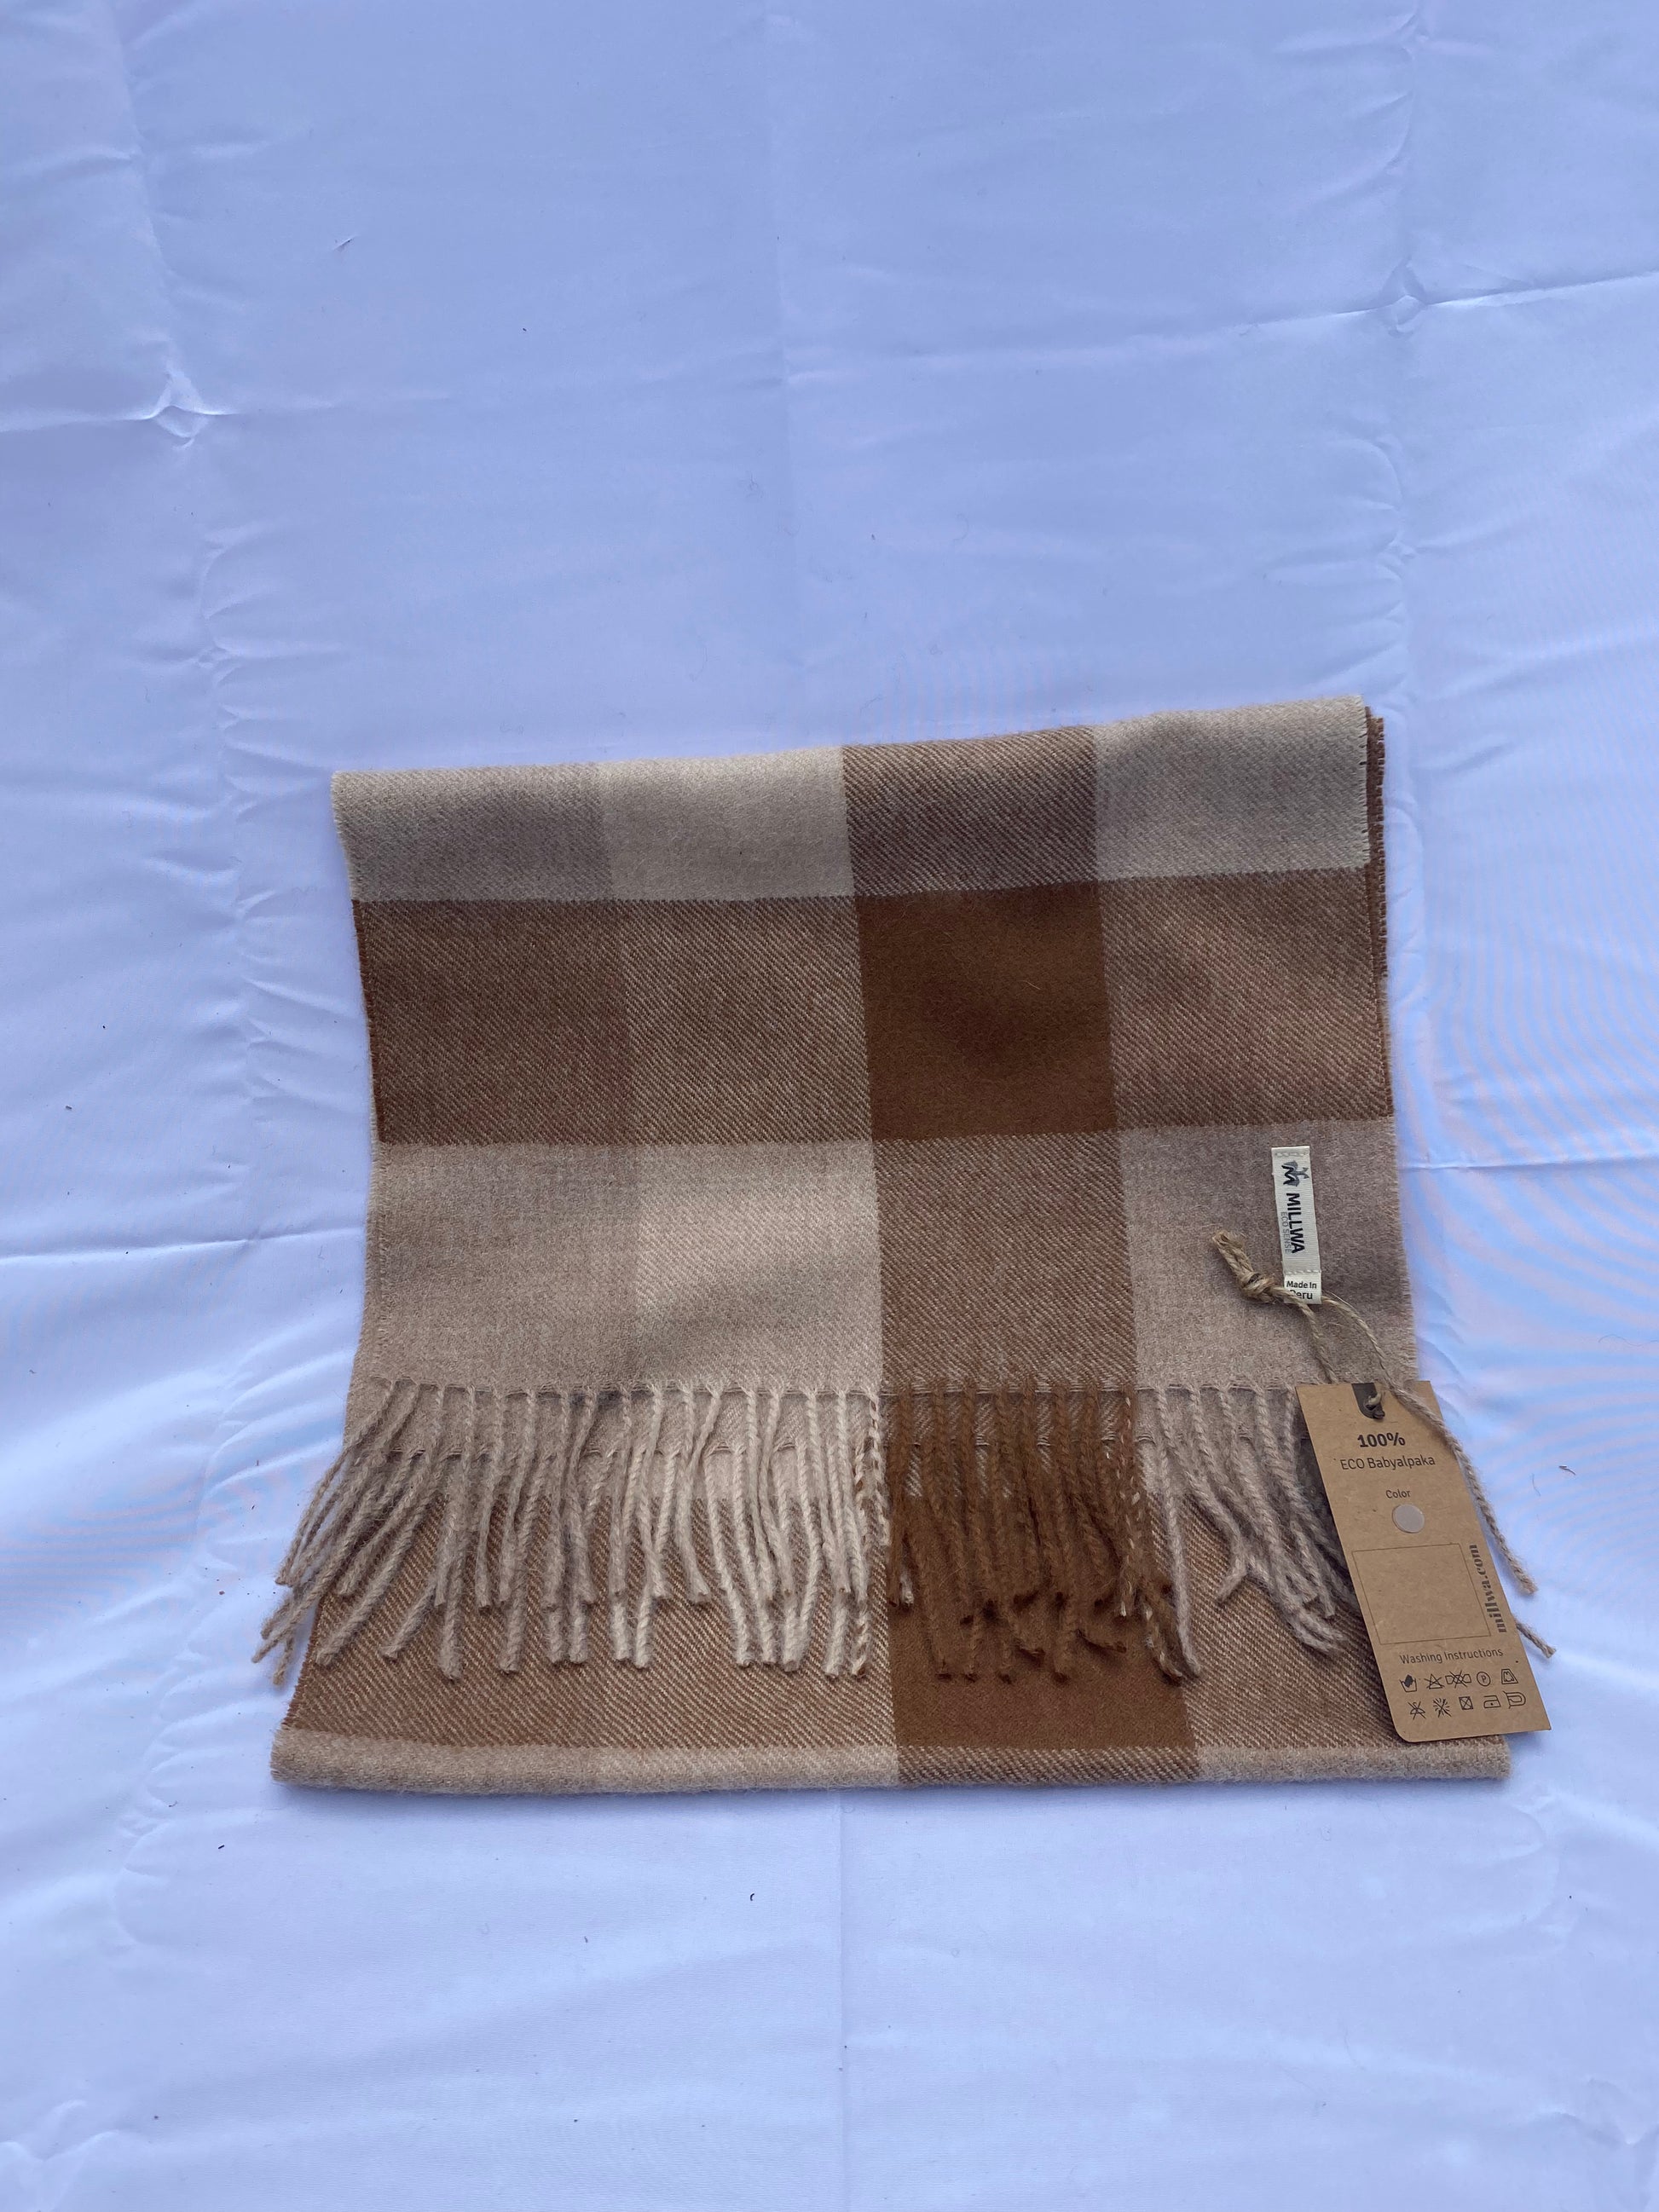 Alpaka Produkte online kaufen - schöne Alpakawoll-Schals in verschiedenen Designs erhältlich!